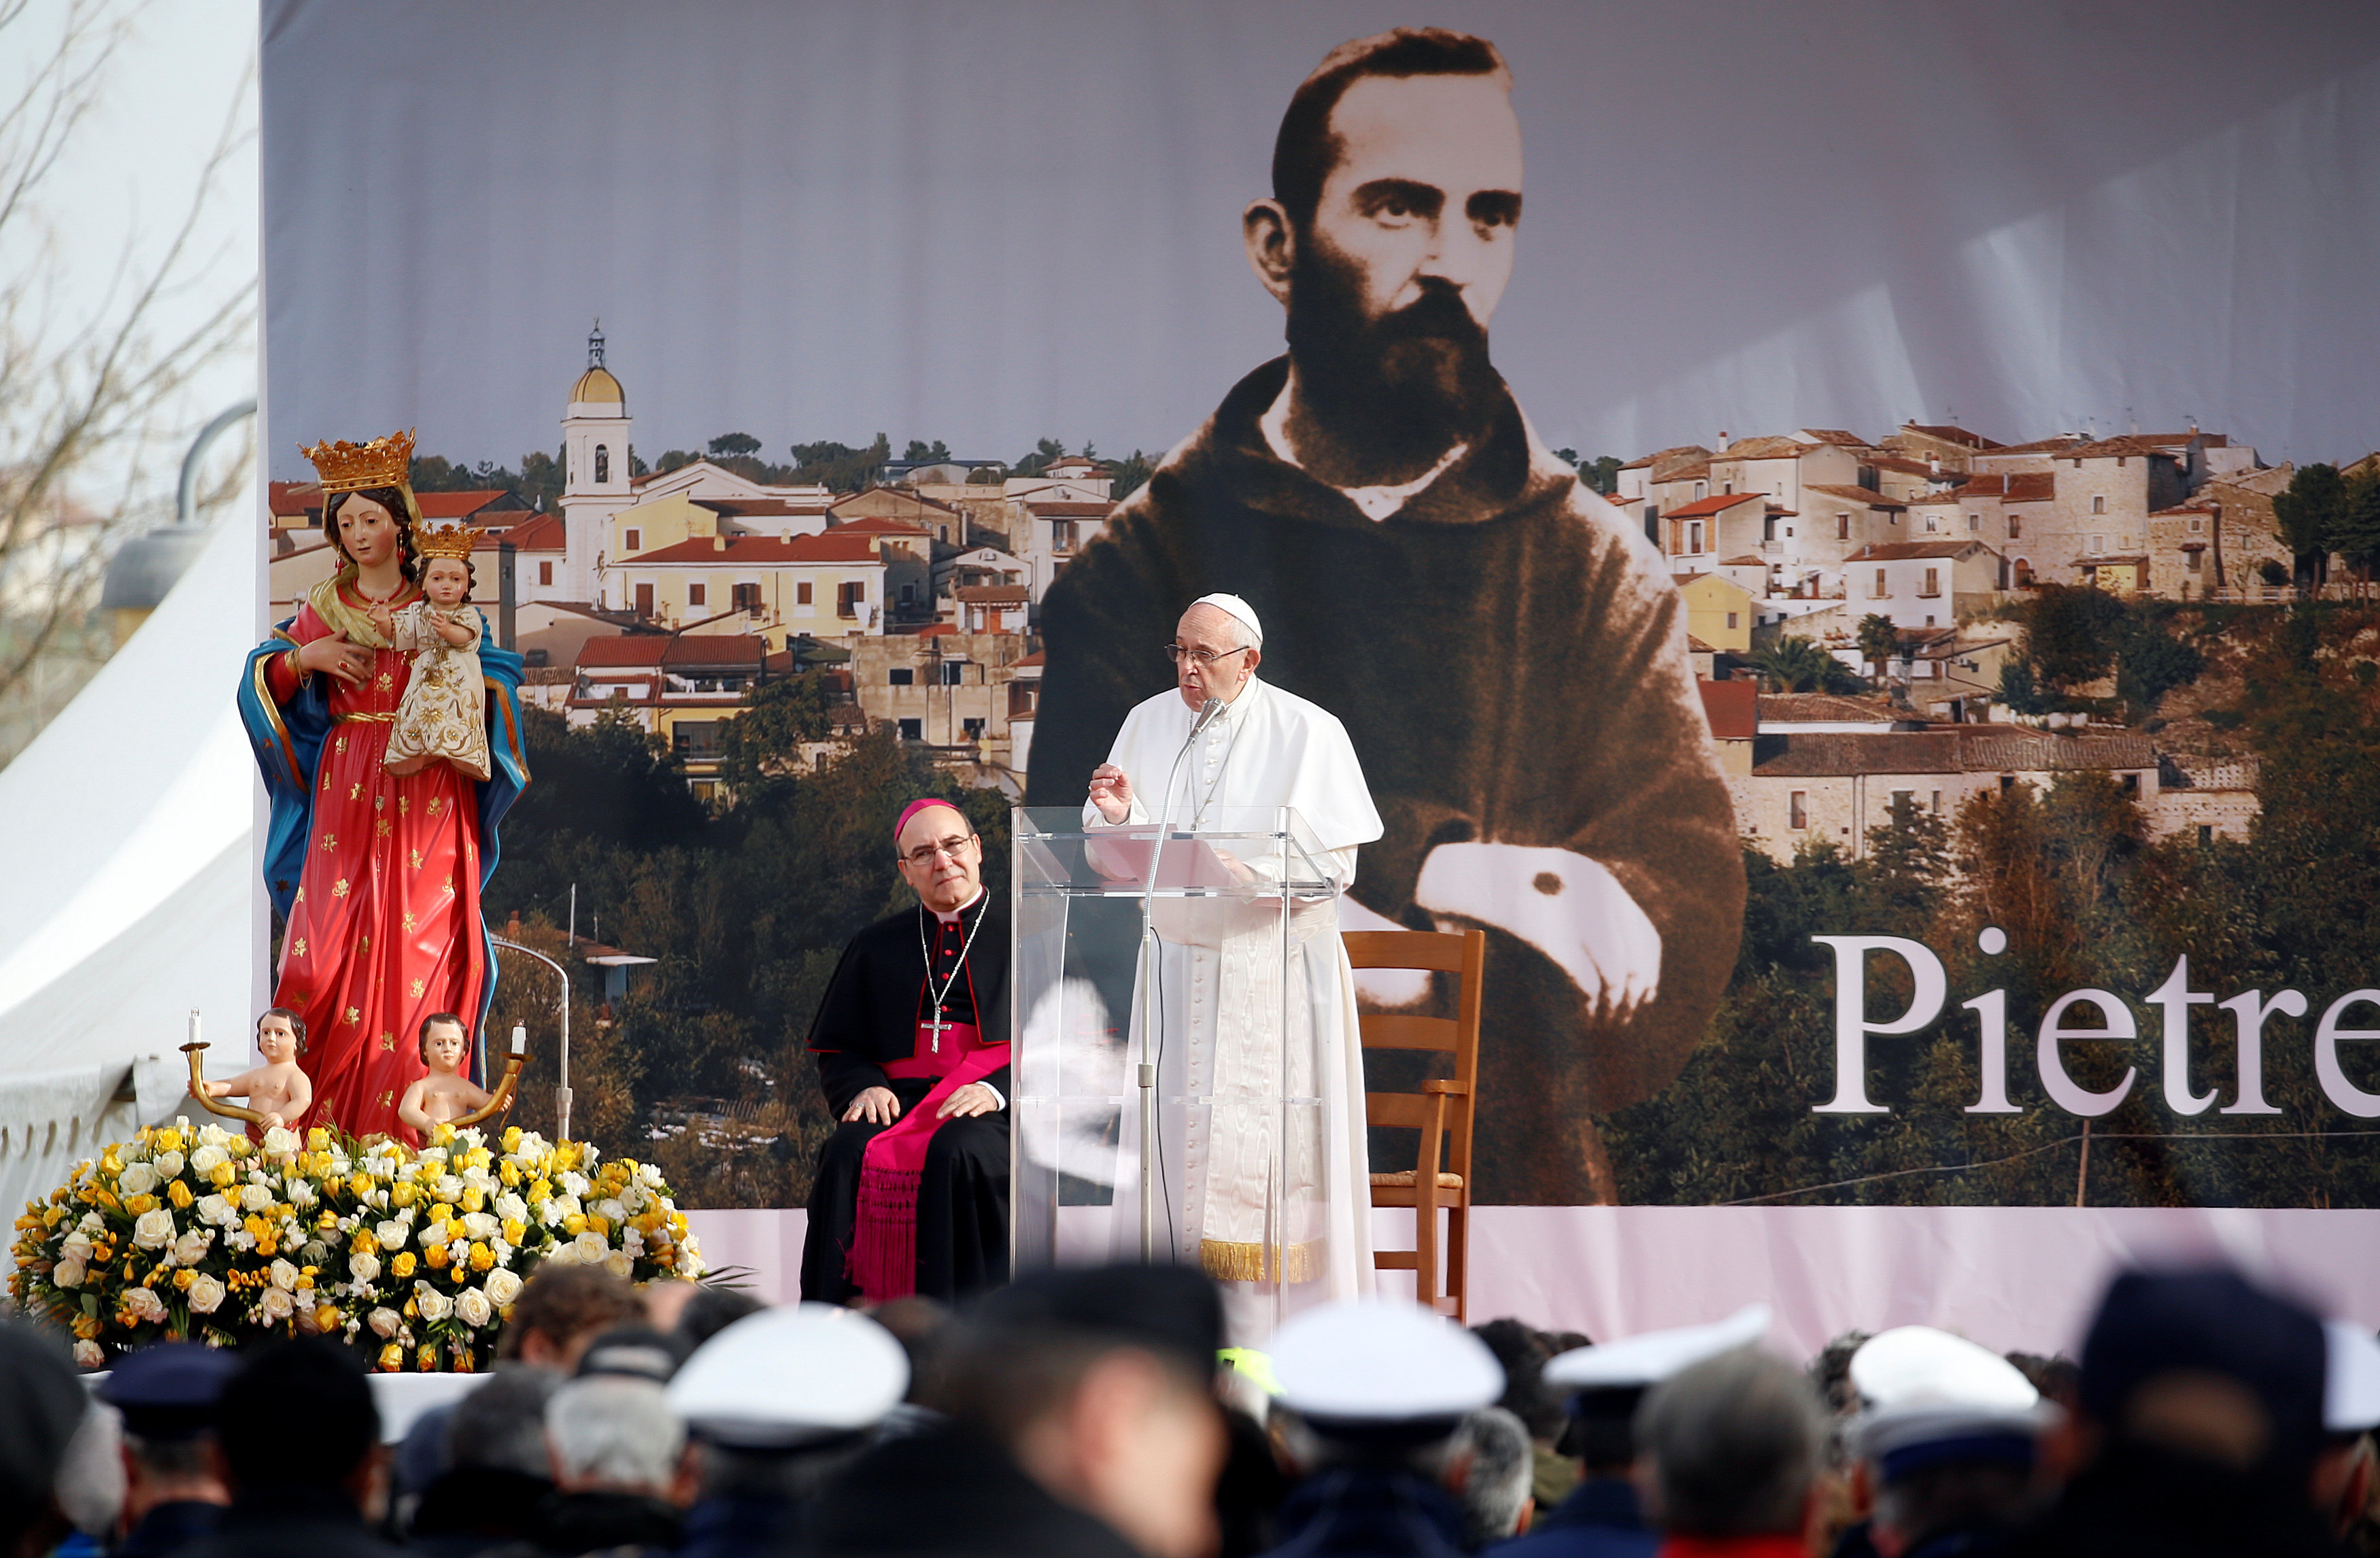 El Papa visitó el pueblo del padre Pío, Pietrelcina, y habló de despoblación